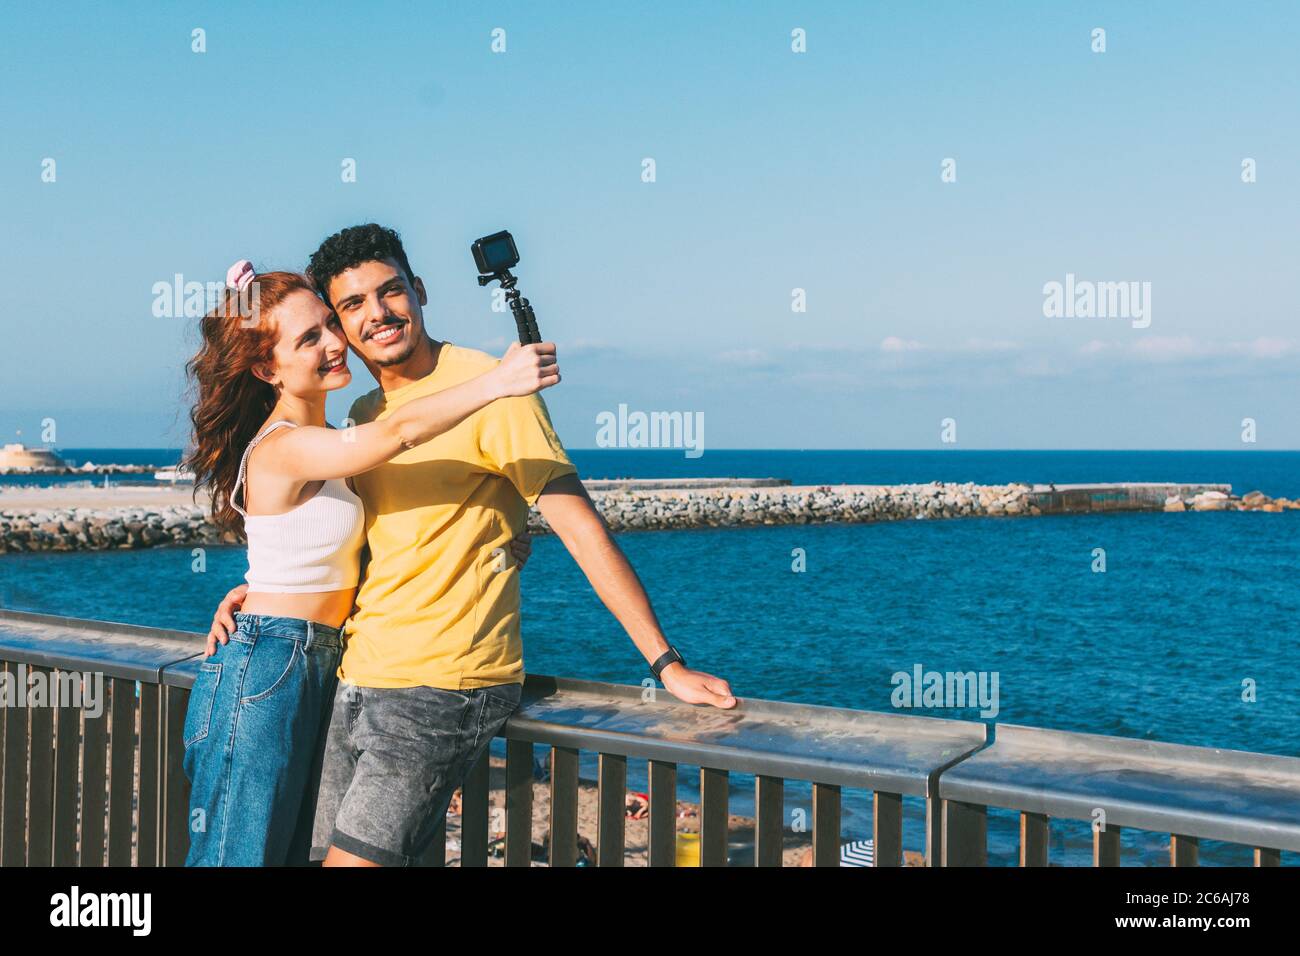 in estate, una giovane coppia prende un selfie vicino alla spiaggia Foto Stock